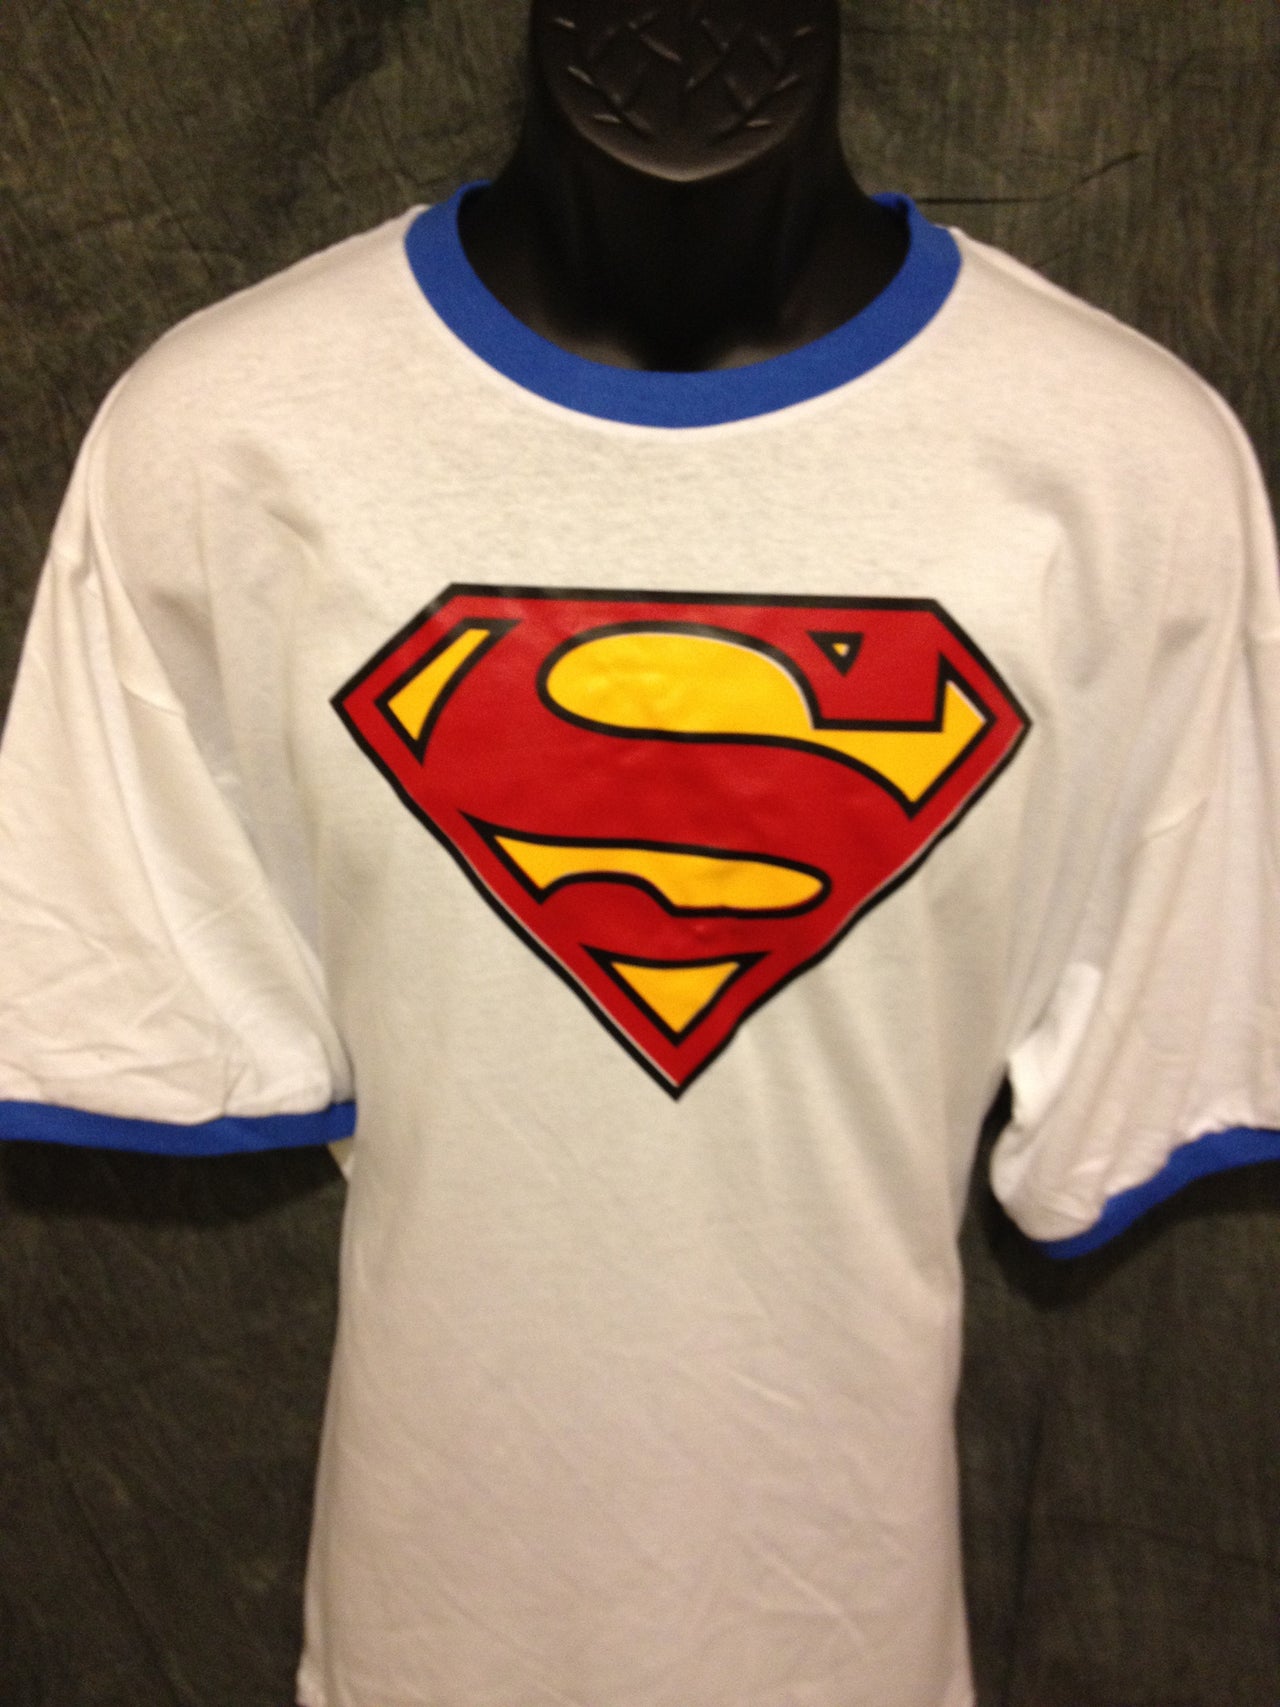 Superman Classic Logo on Blue Ringer Tshirt - TshirtNow.net - 5